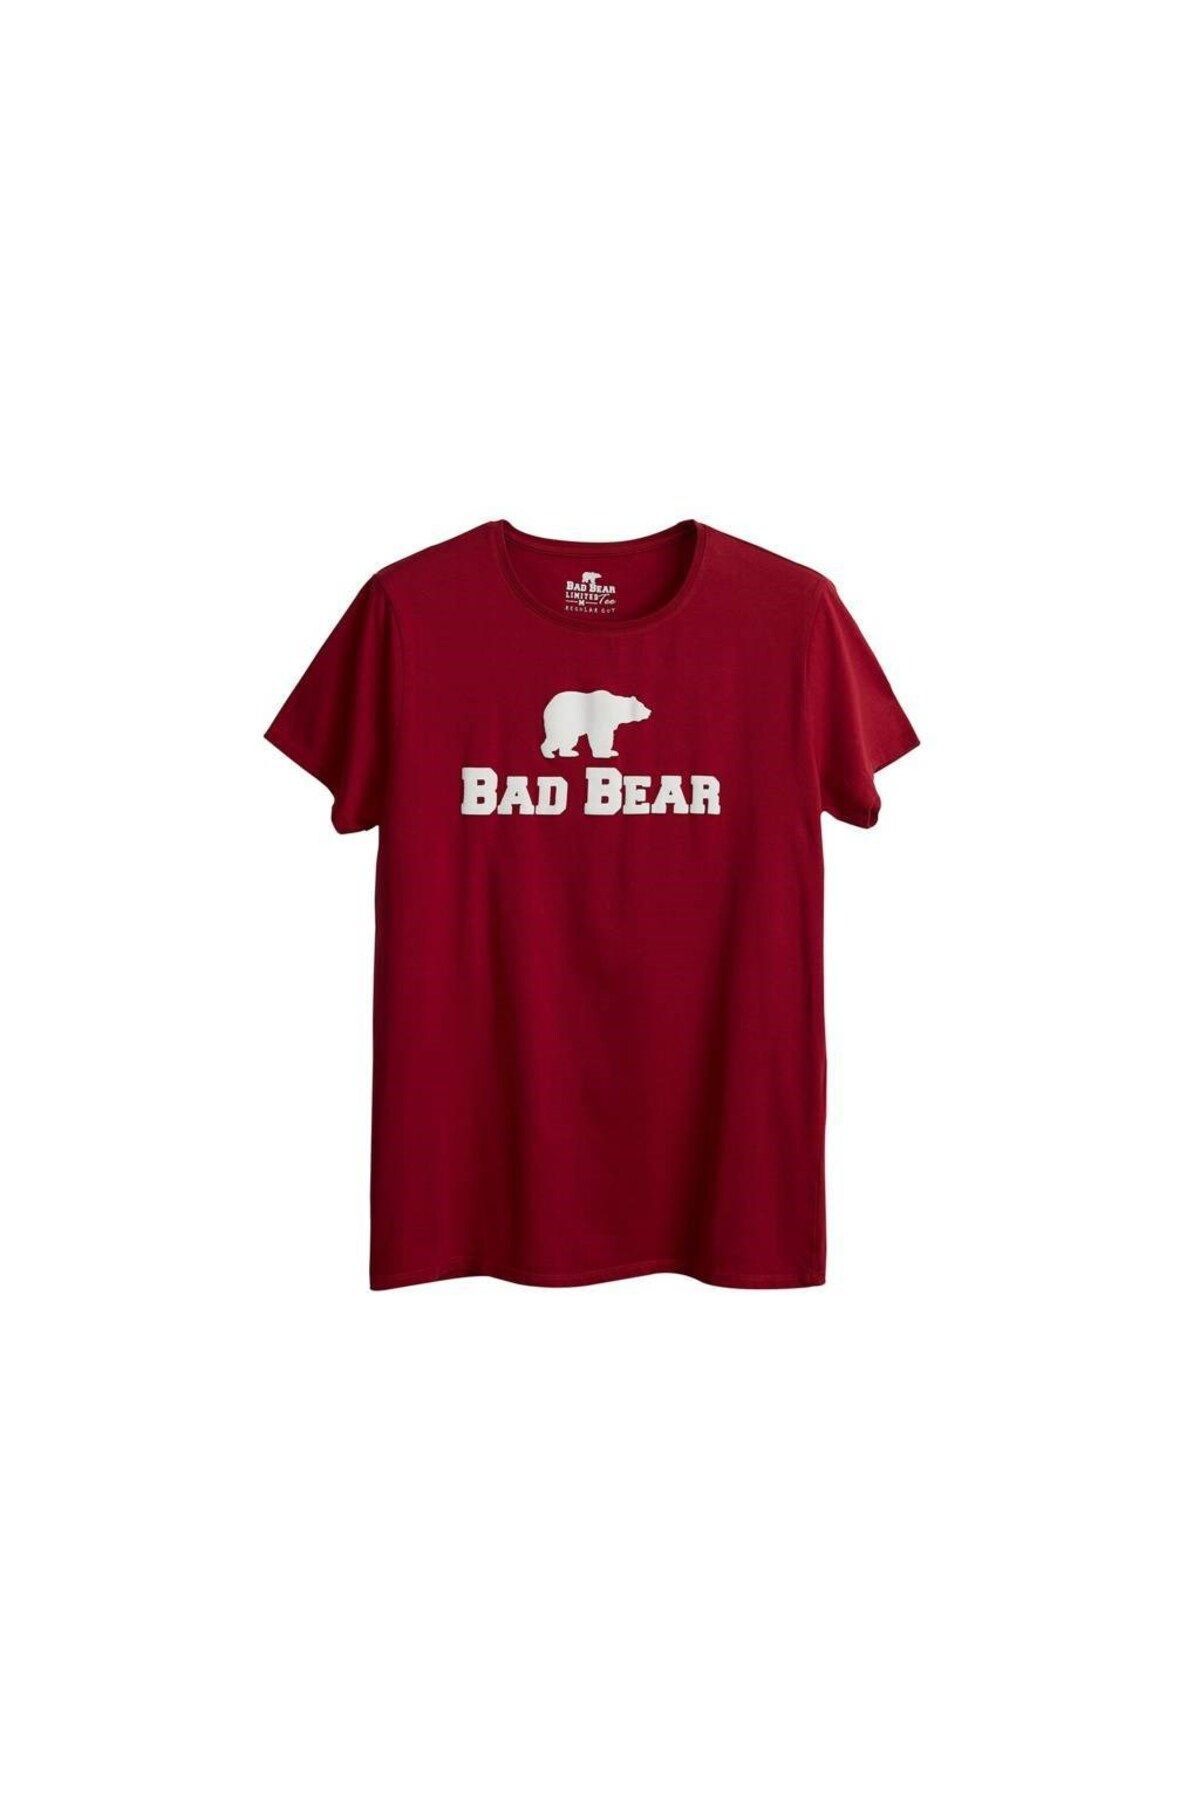 Bad Bear Erkek Tee Lava T-shirt 19.01.07.002-c65